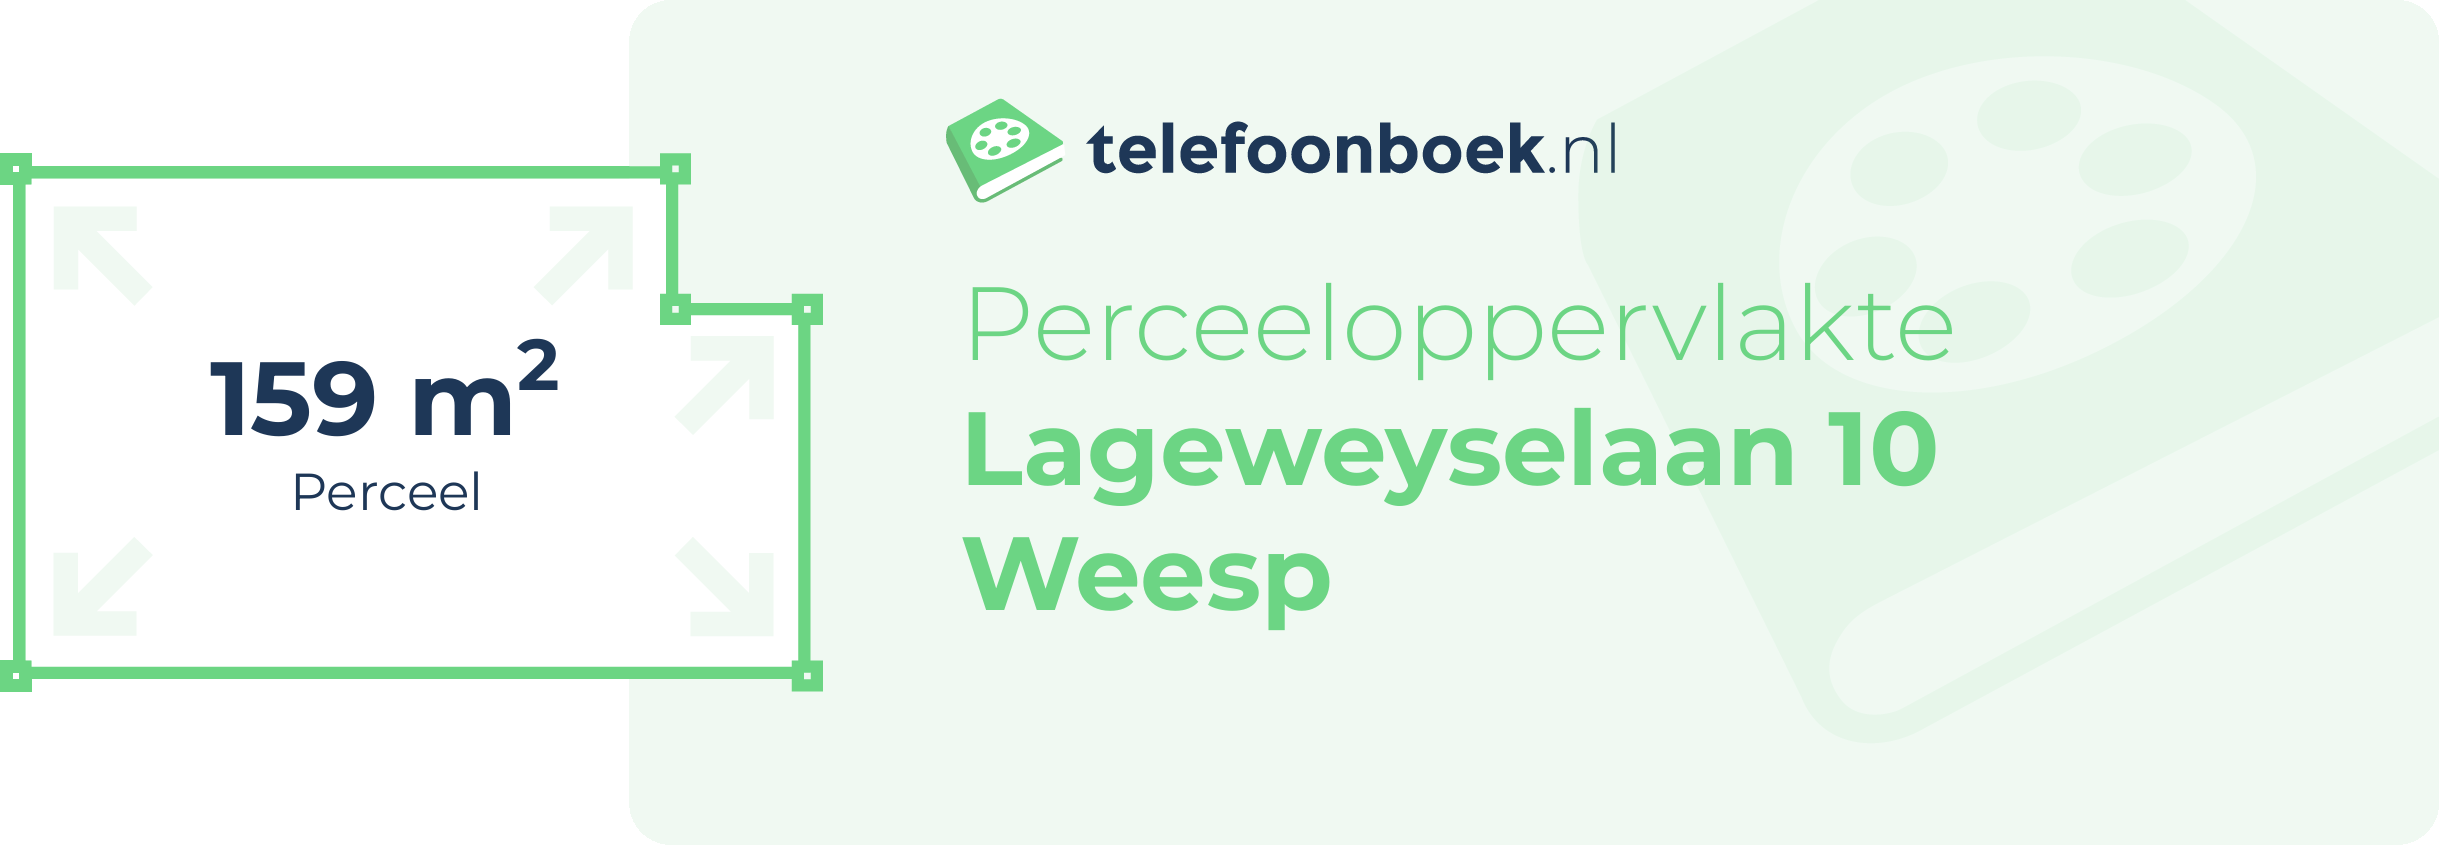 Perceeloppervlakte Lageweyselaan 10 Weesp